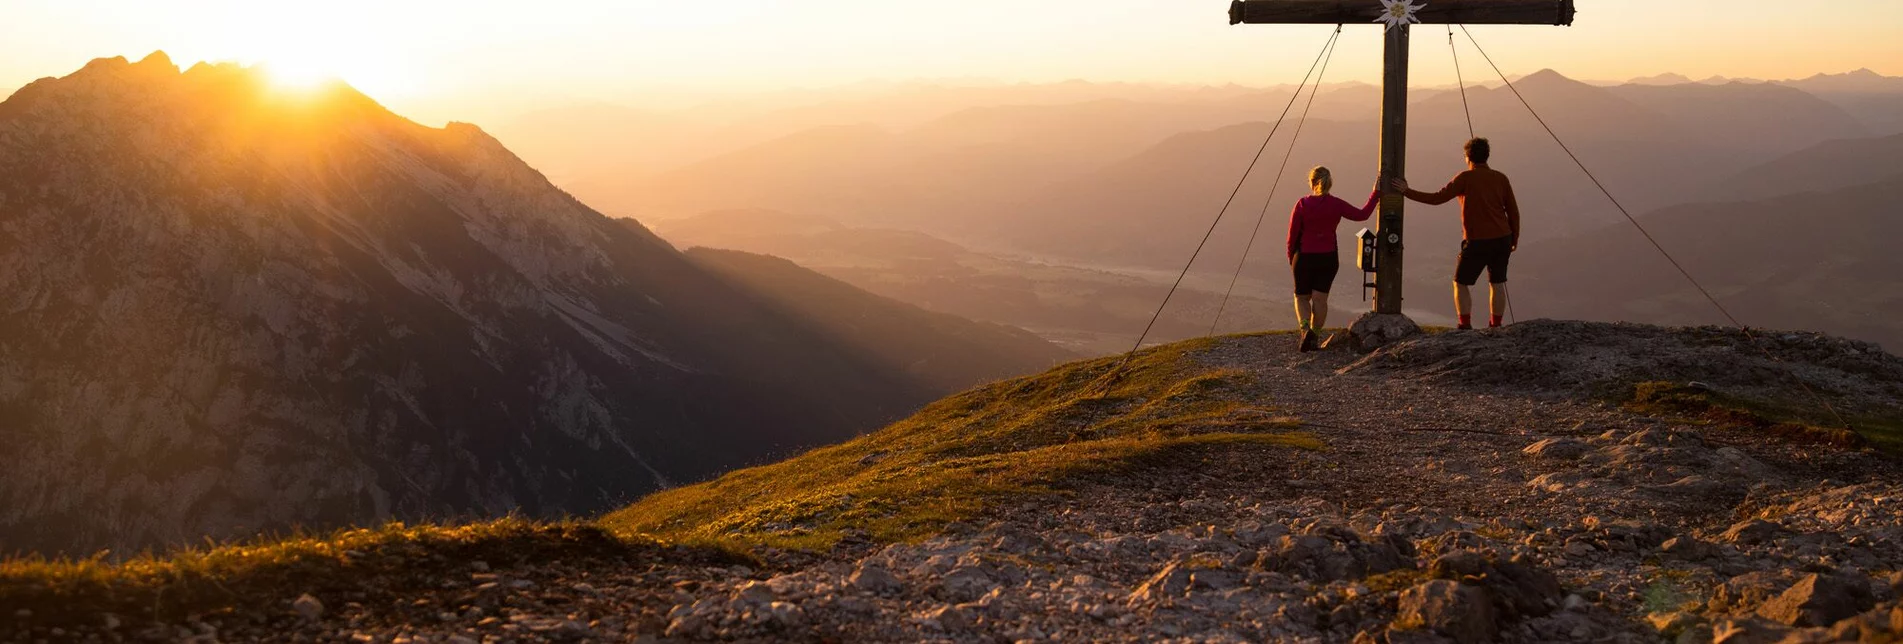 Hiking route Stoderzinken Summit Tour - Touren-Impression #1 | © Erlebnisregion Schladming-Dachstein